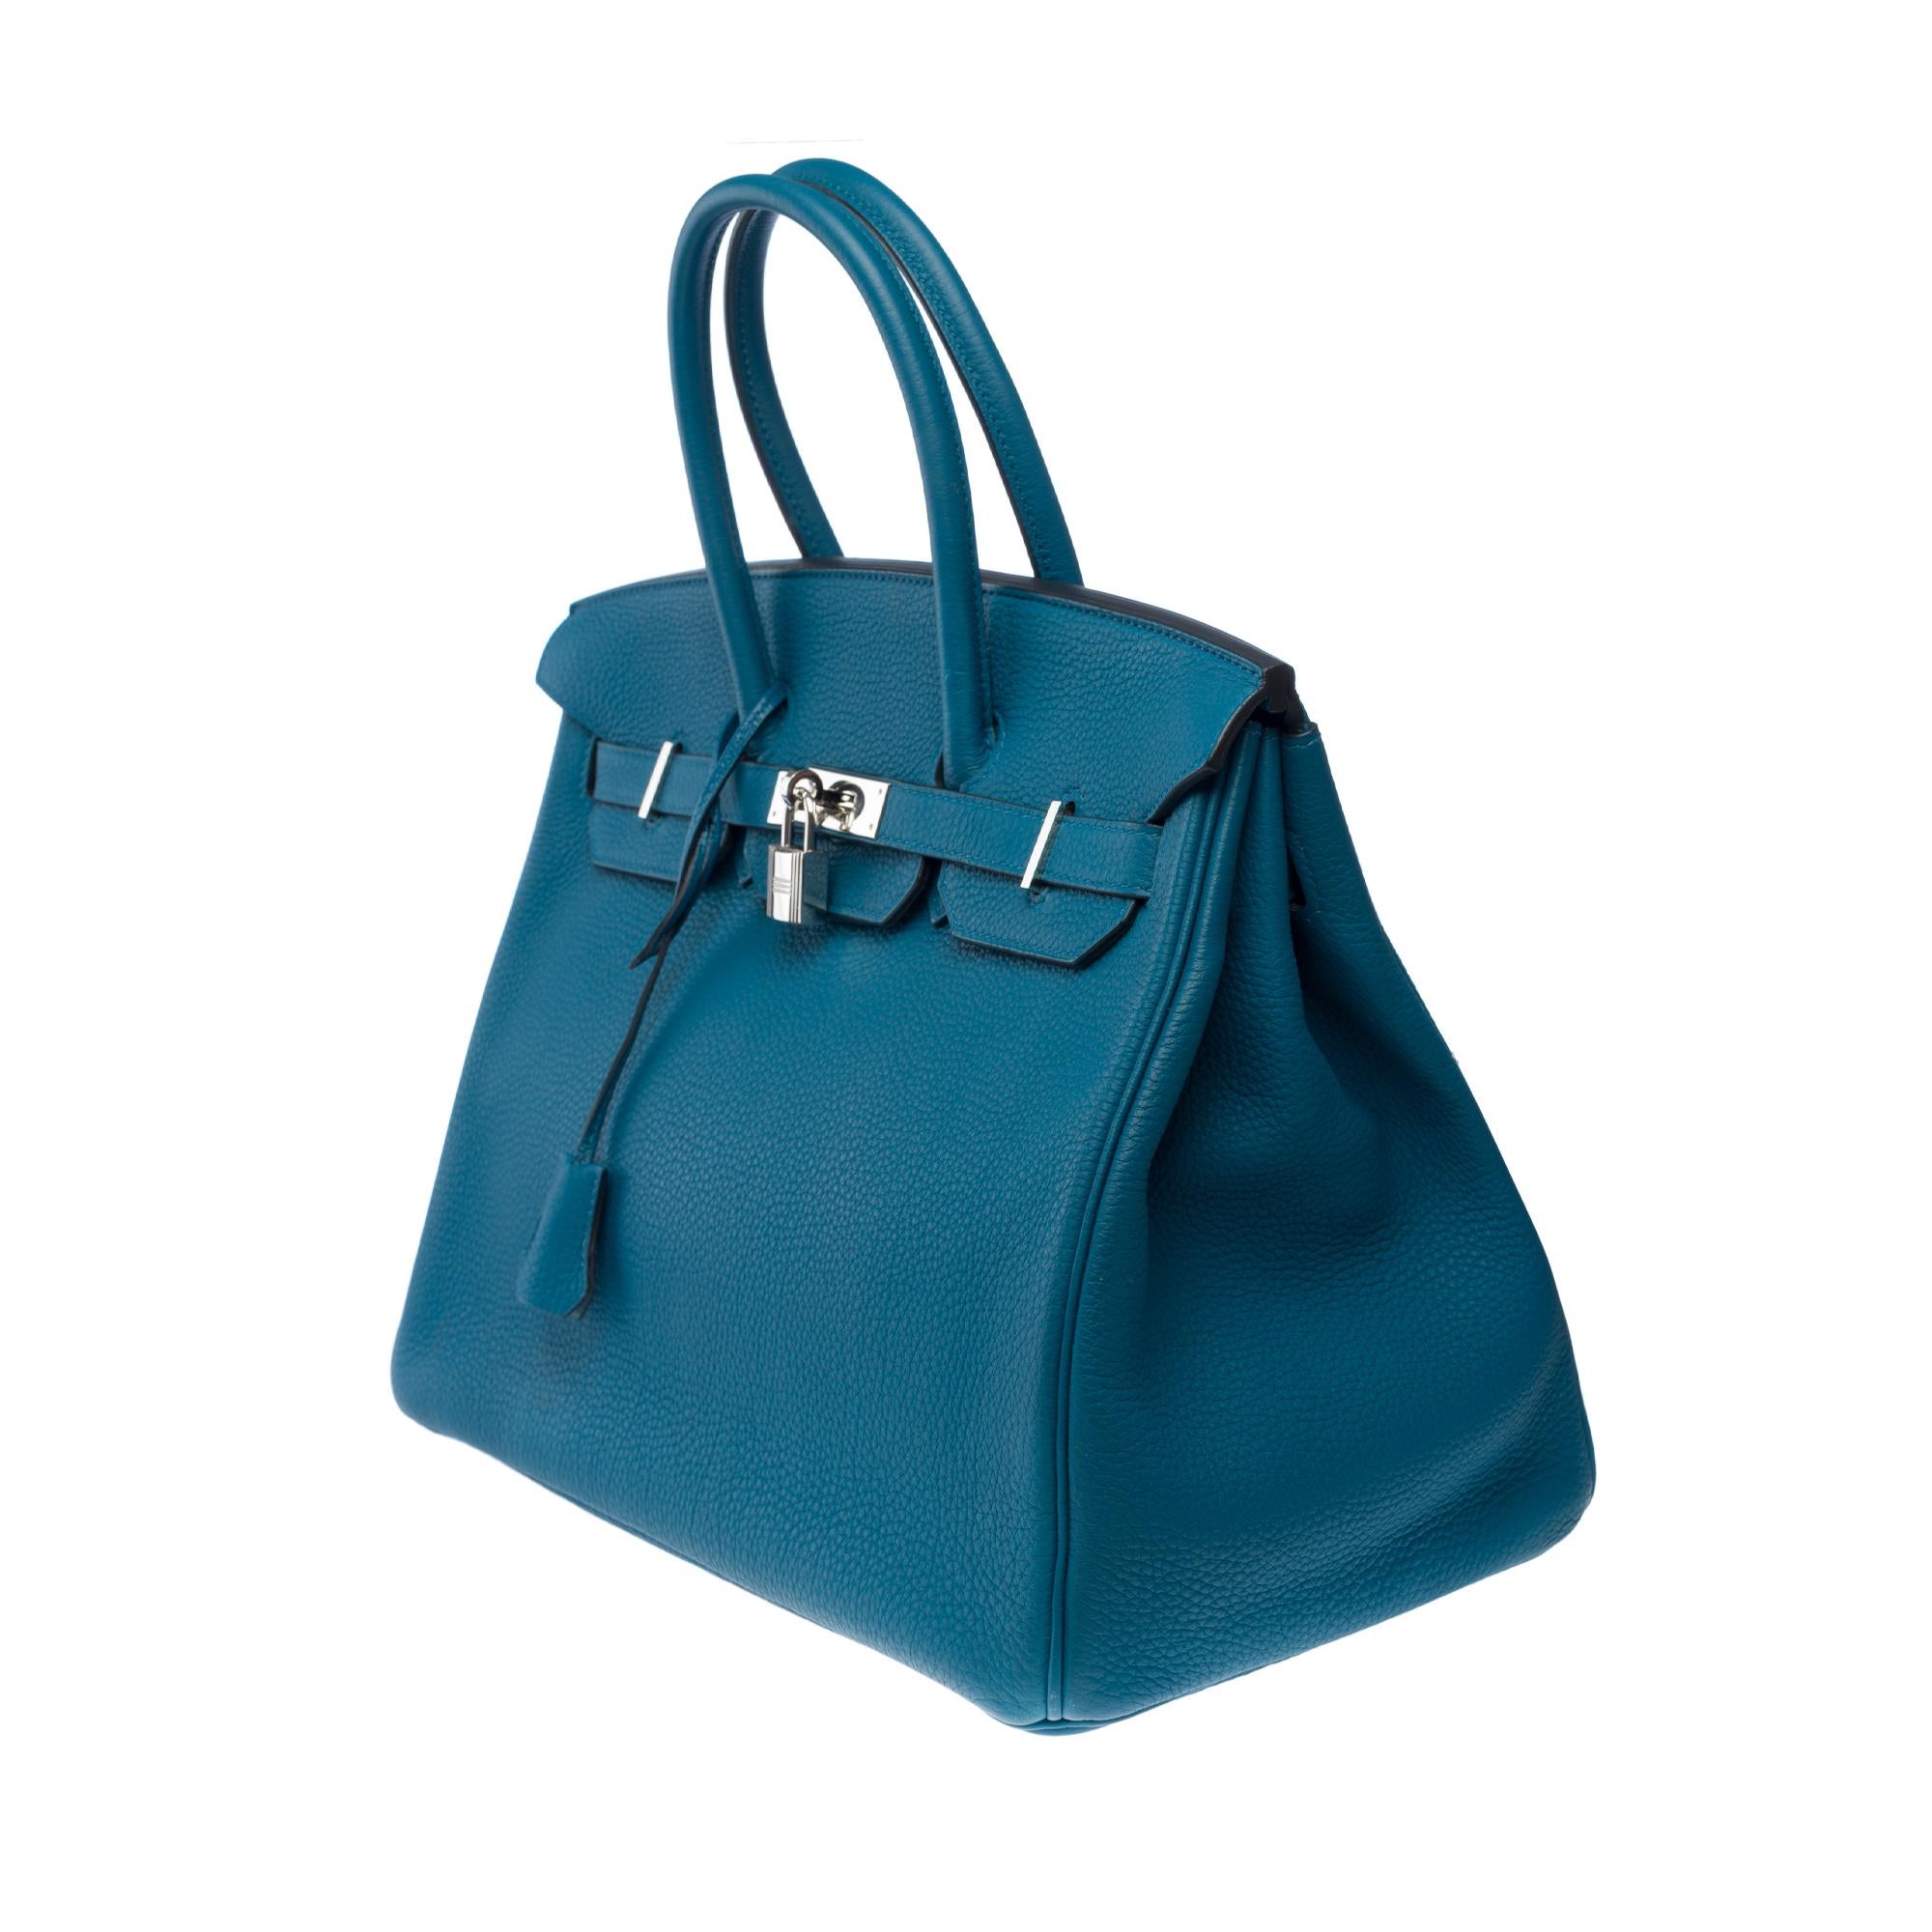 Amazing Hermes Birkin 35 handbag in Bleu Colvert Togo leather, SHW For Sale 1